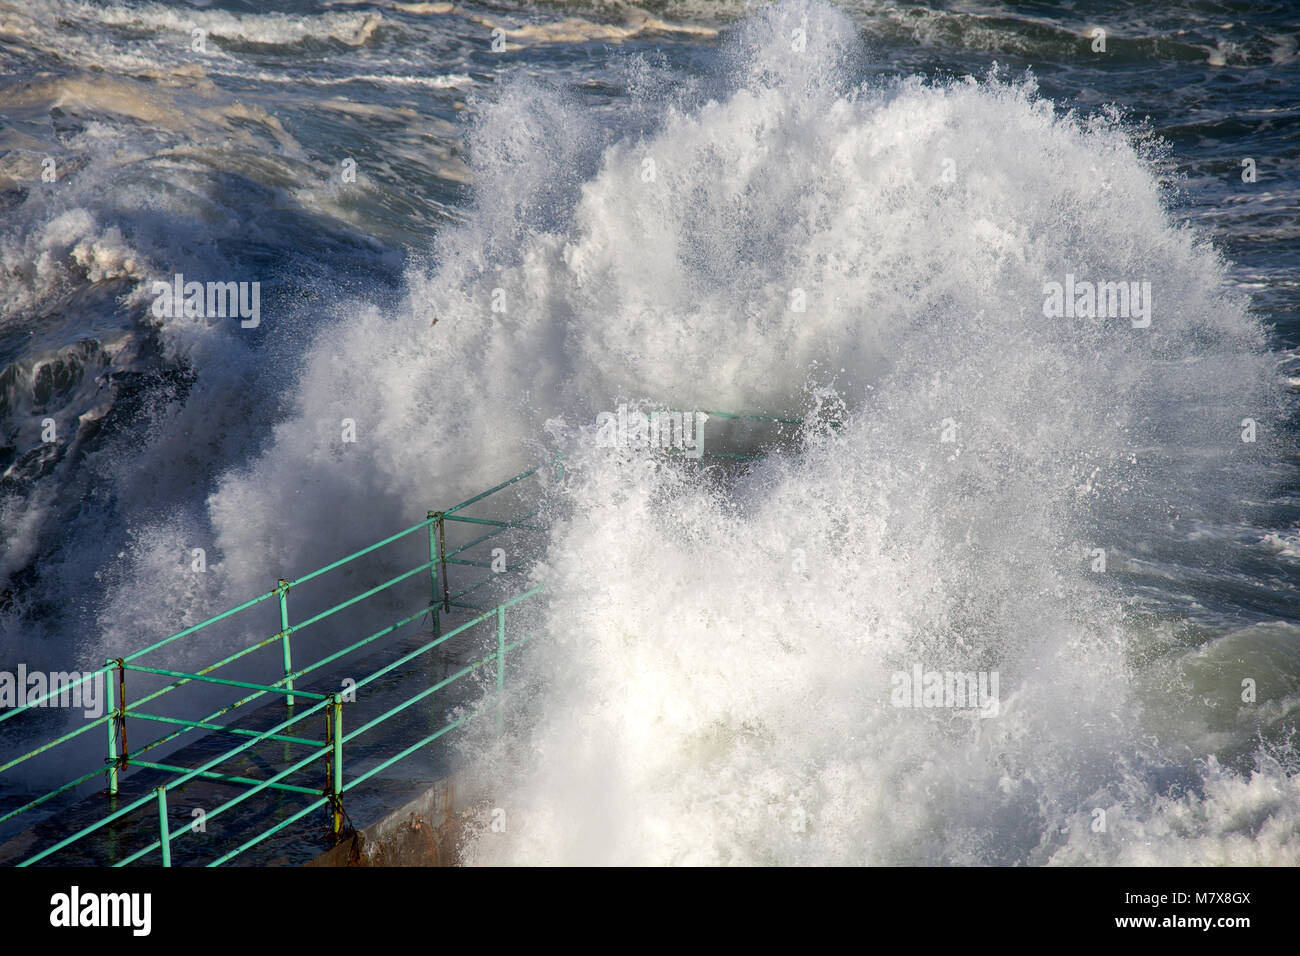 Rough Sea Waves Crashing Over a Pier, mediterranean sea, ligurian coast, Italy. Stock Photo